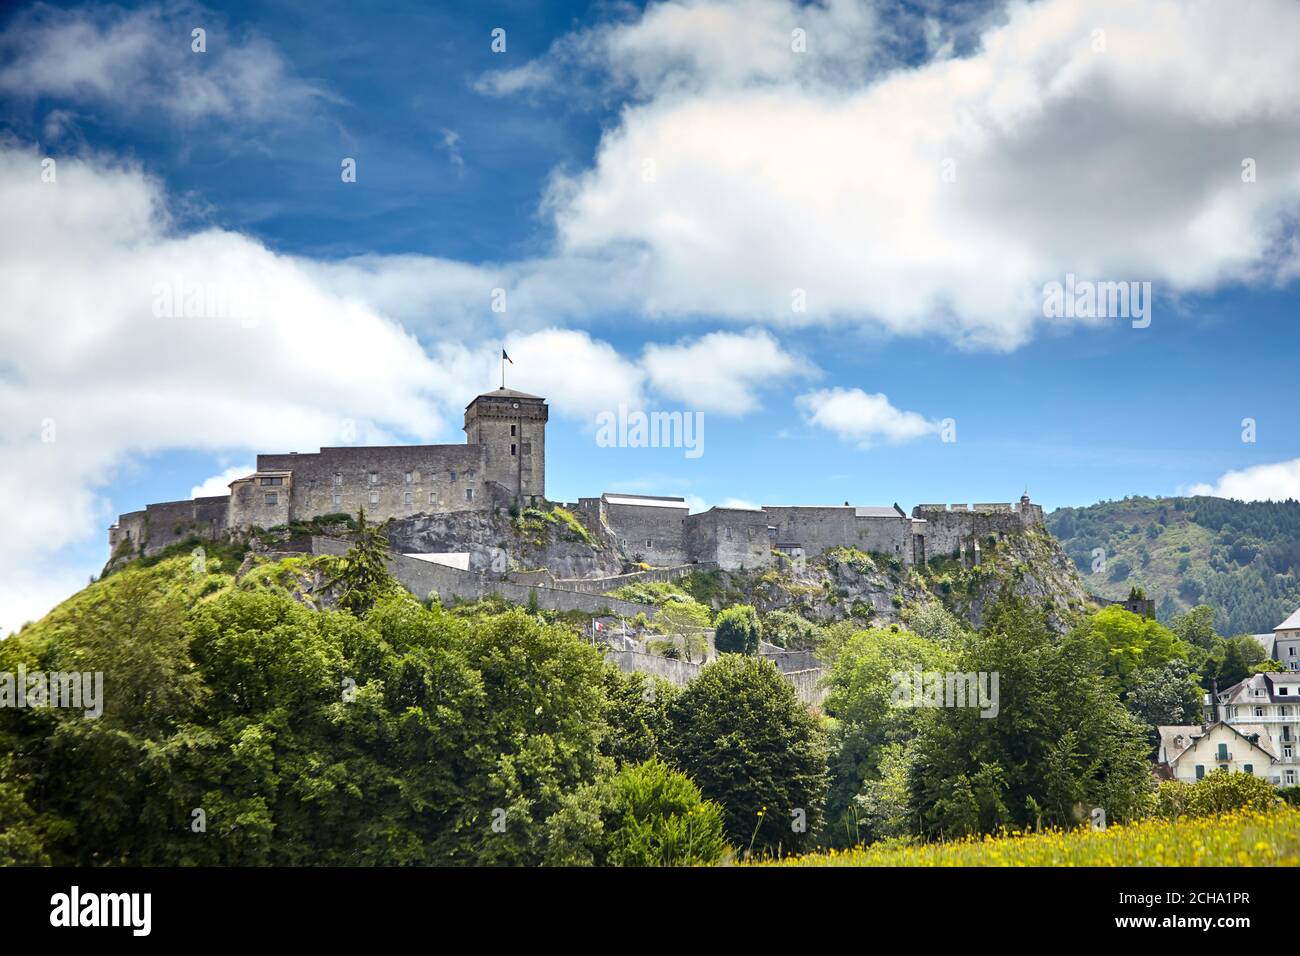 Schloss Fort von Lourdes. Burg auf einem Felsen. Blauer Himmel mit weißen Wolken. Französisch Stadt liegt in Südfrankreich in den Ausläufern der Pyrenäen Moun Stockfoto